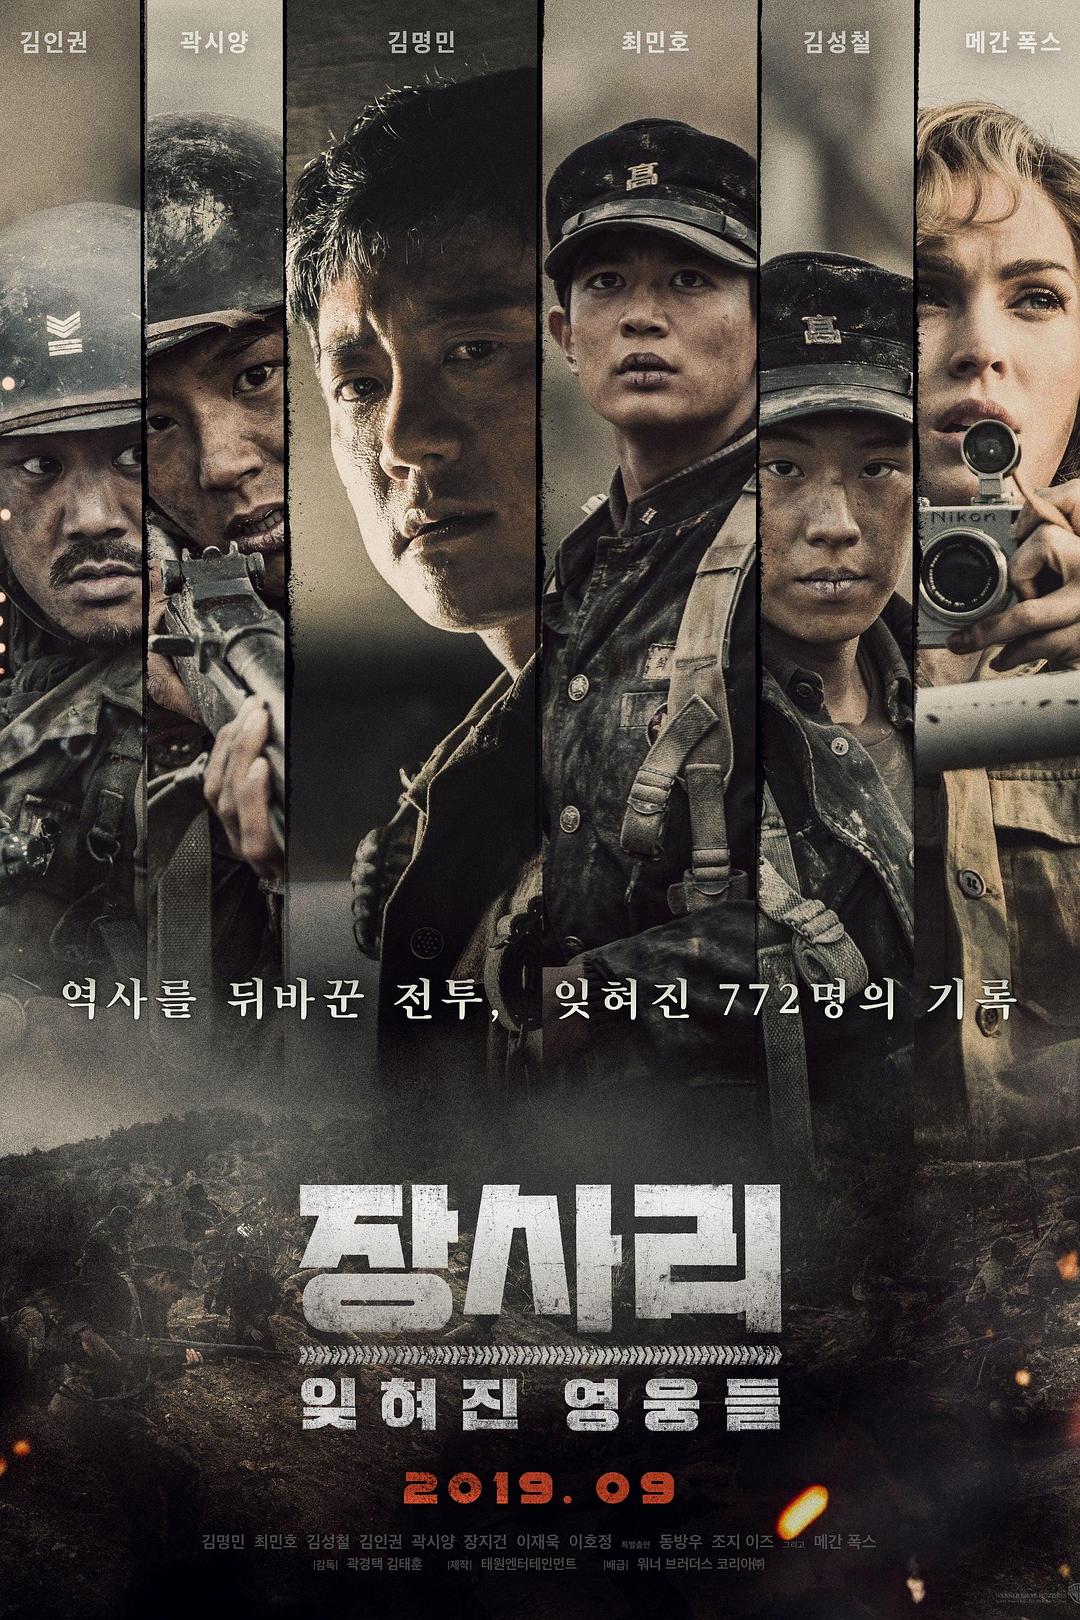 长沙里:被忘记的豪杰们 The.Battle.of.Jangsari.2019.INTERNAL.720p.BluRay.x264-JRP 6.56GB-1.png